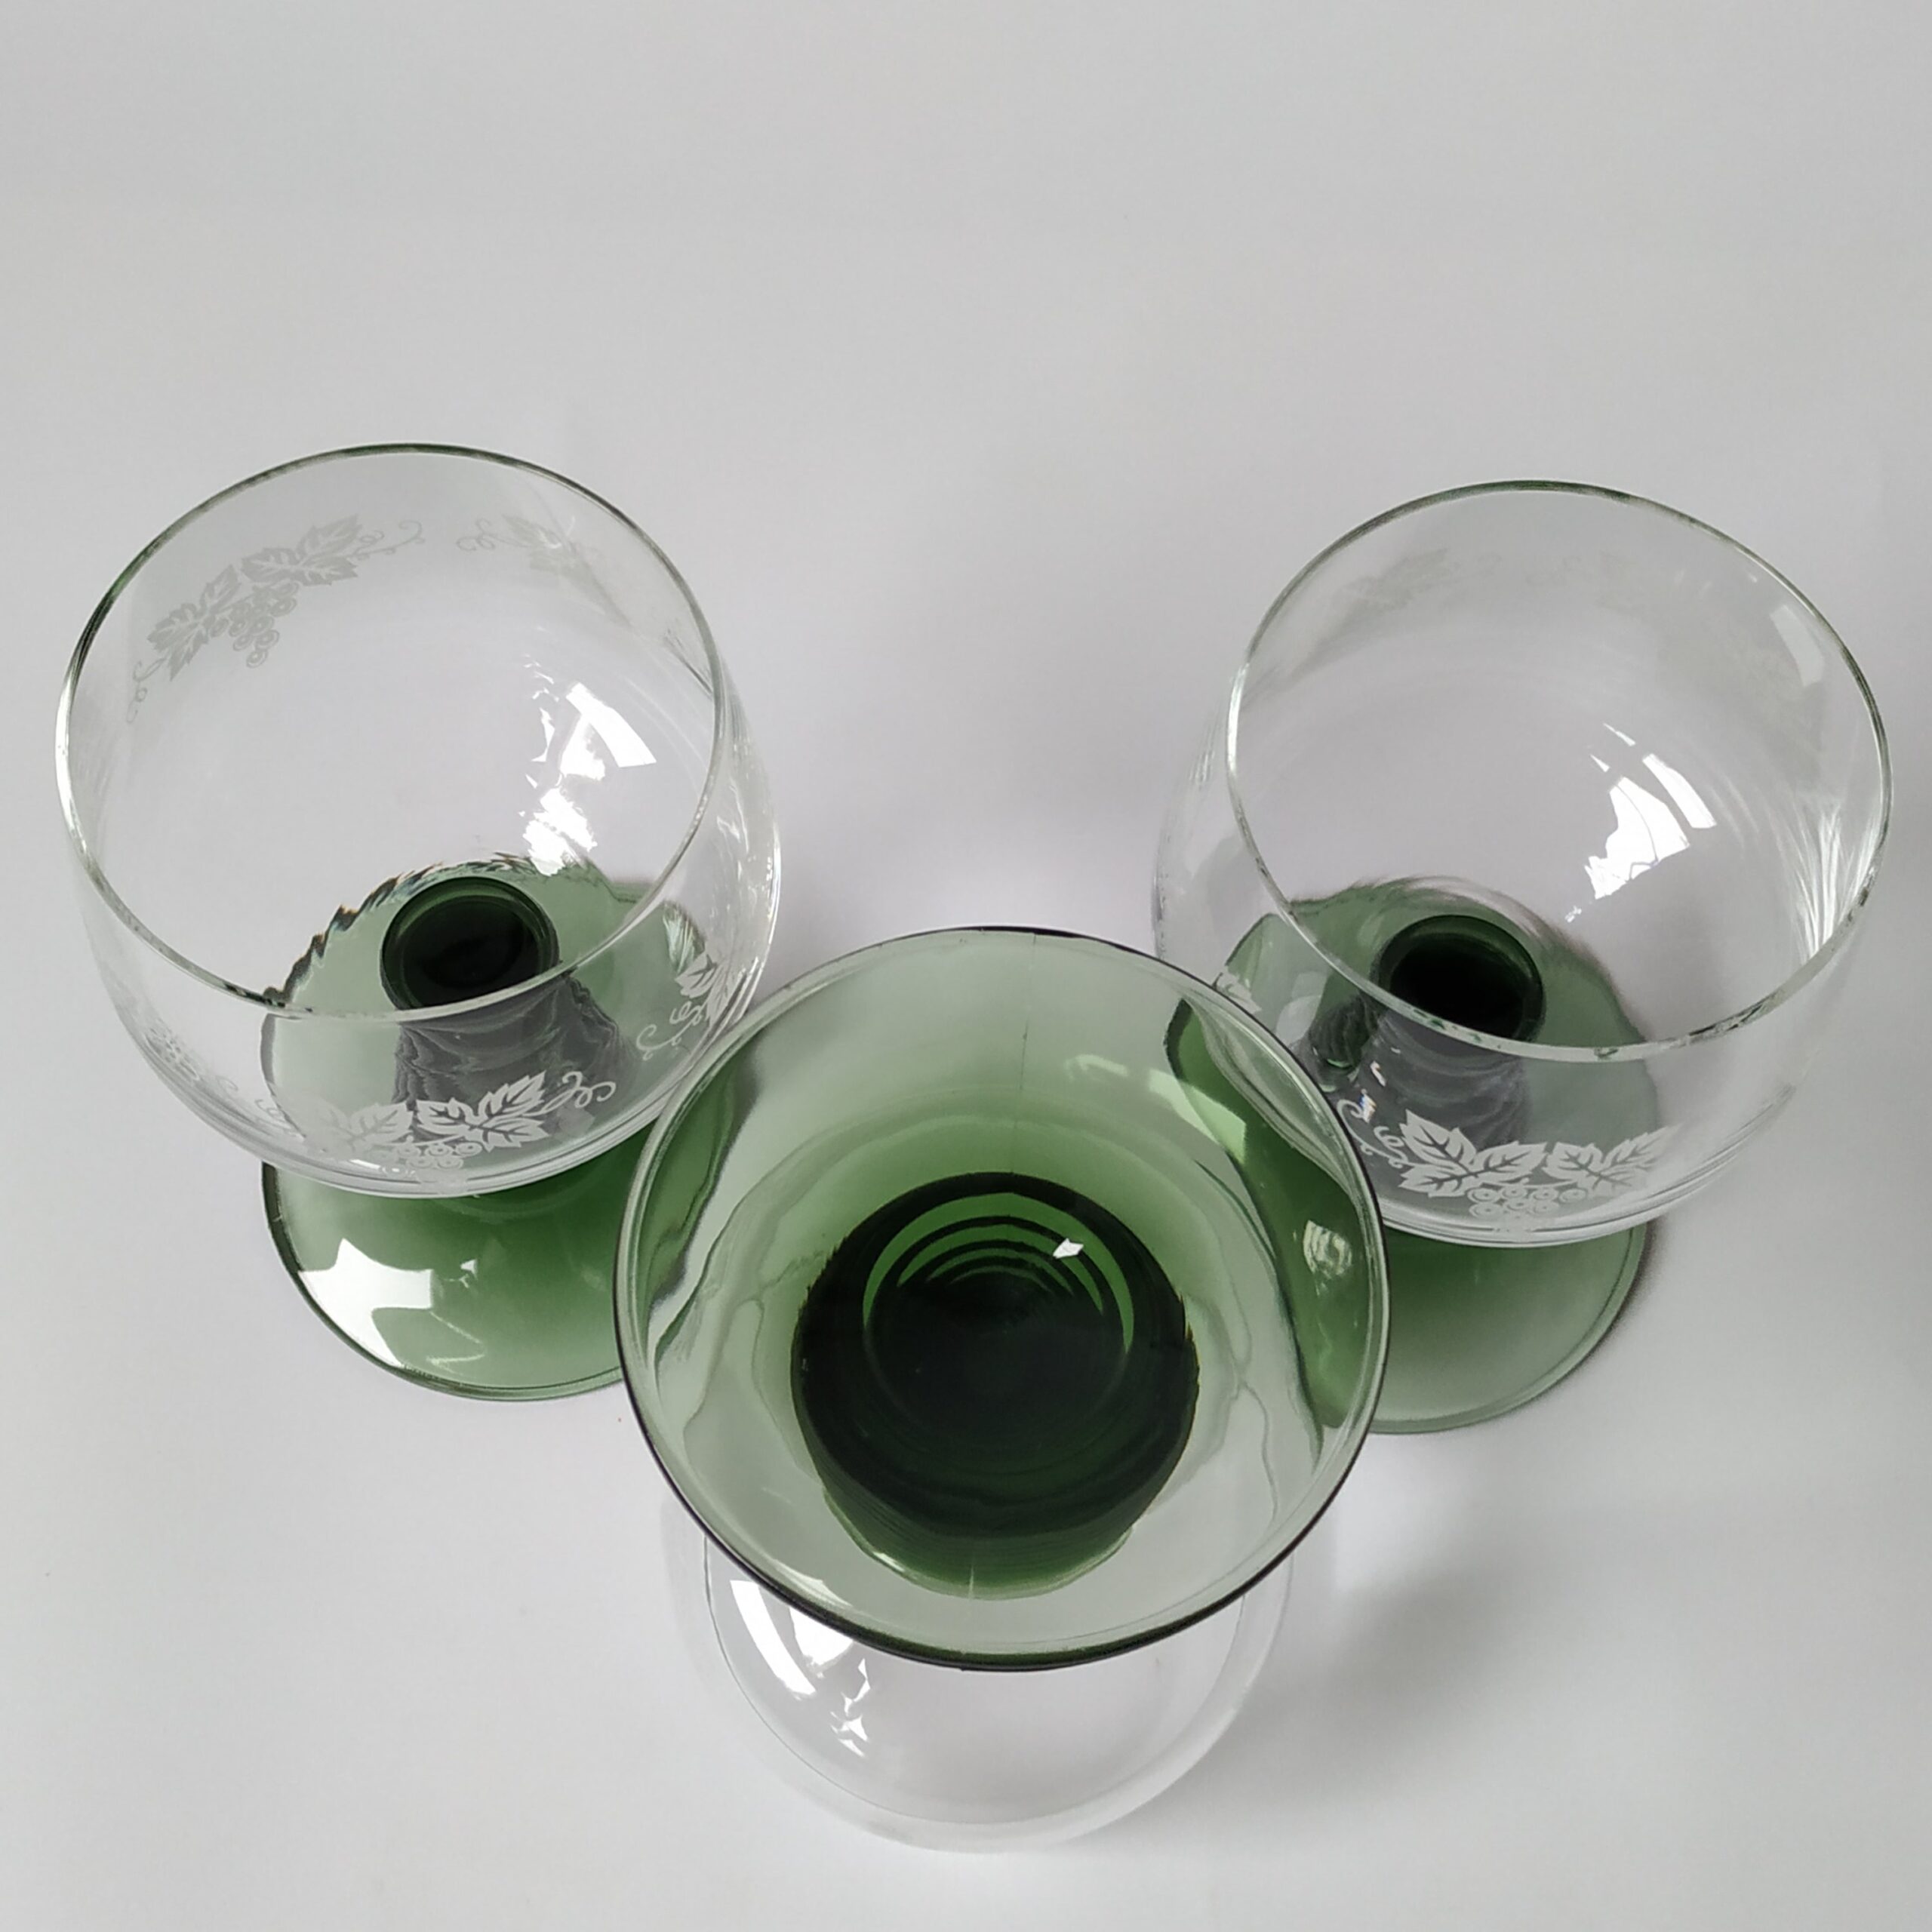 Wijnglazen – moezelglazen met groene voet en afbeelding druiventak – 3 stuks – inhoud 200 ml (2)